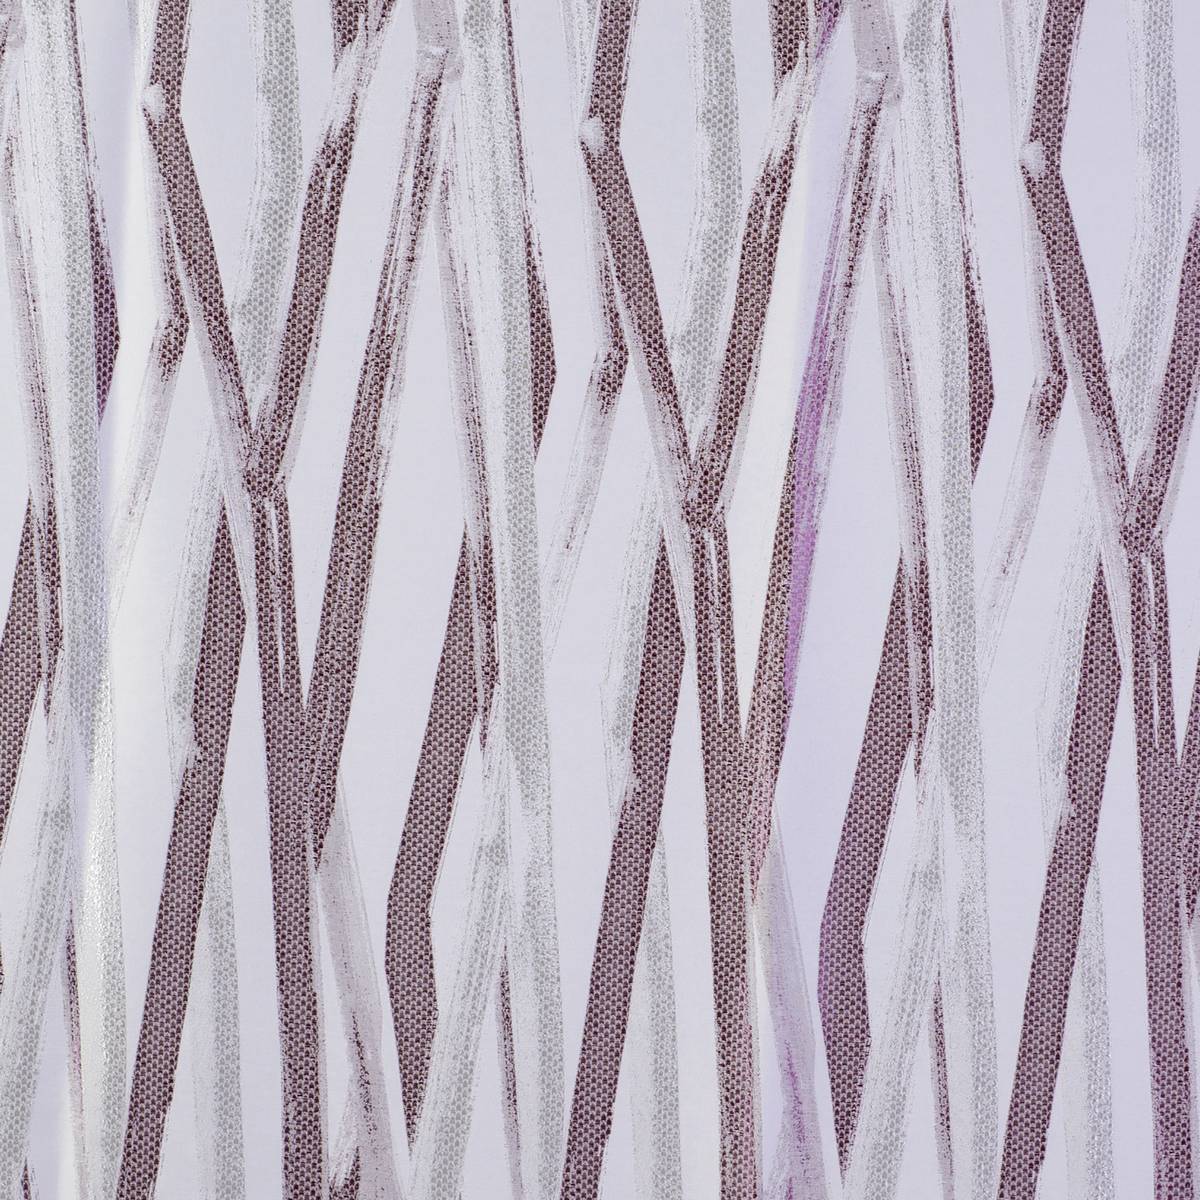 Rye Plum Fabric by Ashley Wilde